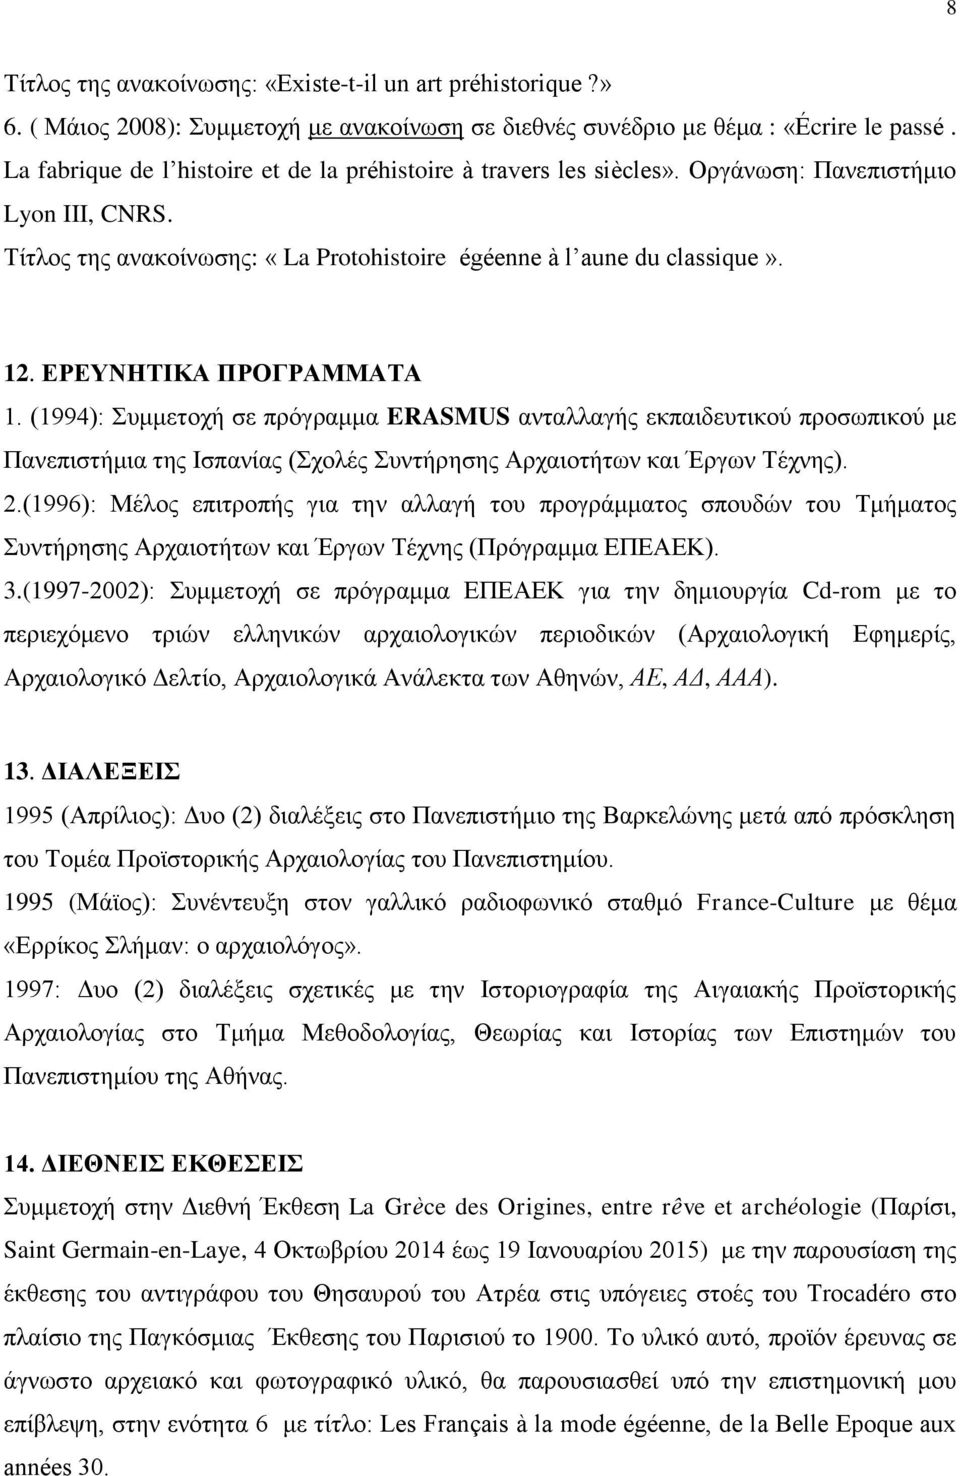 ΕΡΕΥΝΗΤΙΚΑ ΠΡΟΓΡΑΜΜΑΤΑ 1. (1994): Συμμετοχή σε πρόγραμμα ERASMUS ανταλλαγής εκπαιδευτικού προσωπικού με Πανεπιστήμια της Ισπανίας (Σχολές Συντήρησης Αρχαιοτήτων και Έργων Τέχνης). 2.